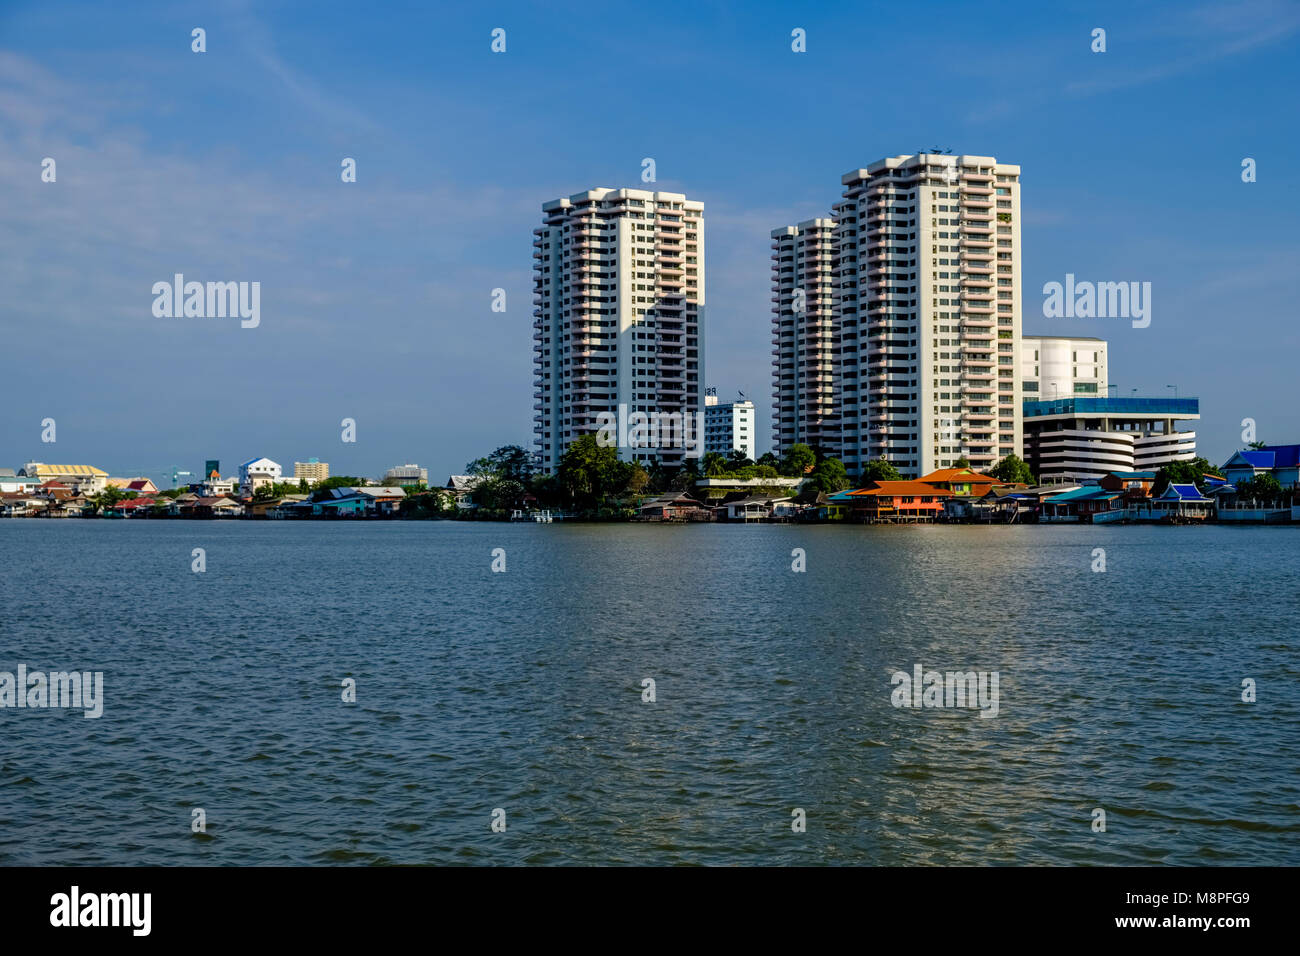 Les maisons sur pilotis et certains immeubles de grande hauteur, vu de l'autre côté de la rivière Chao Phraya Banque D'Images